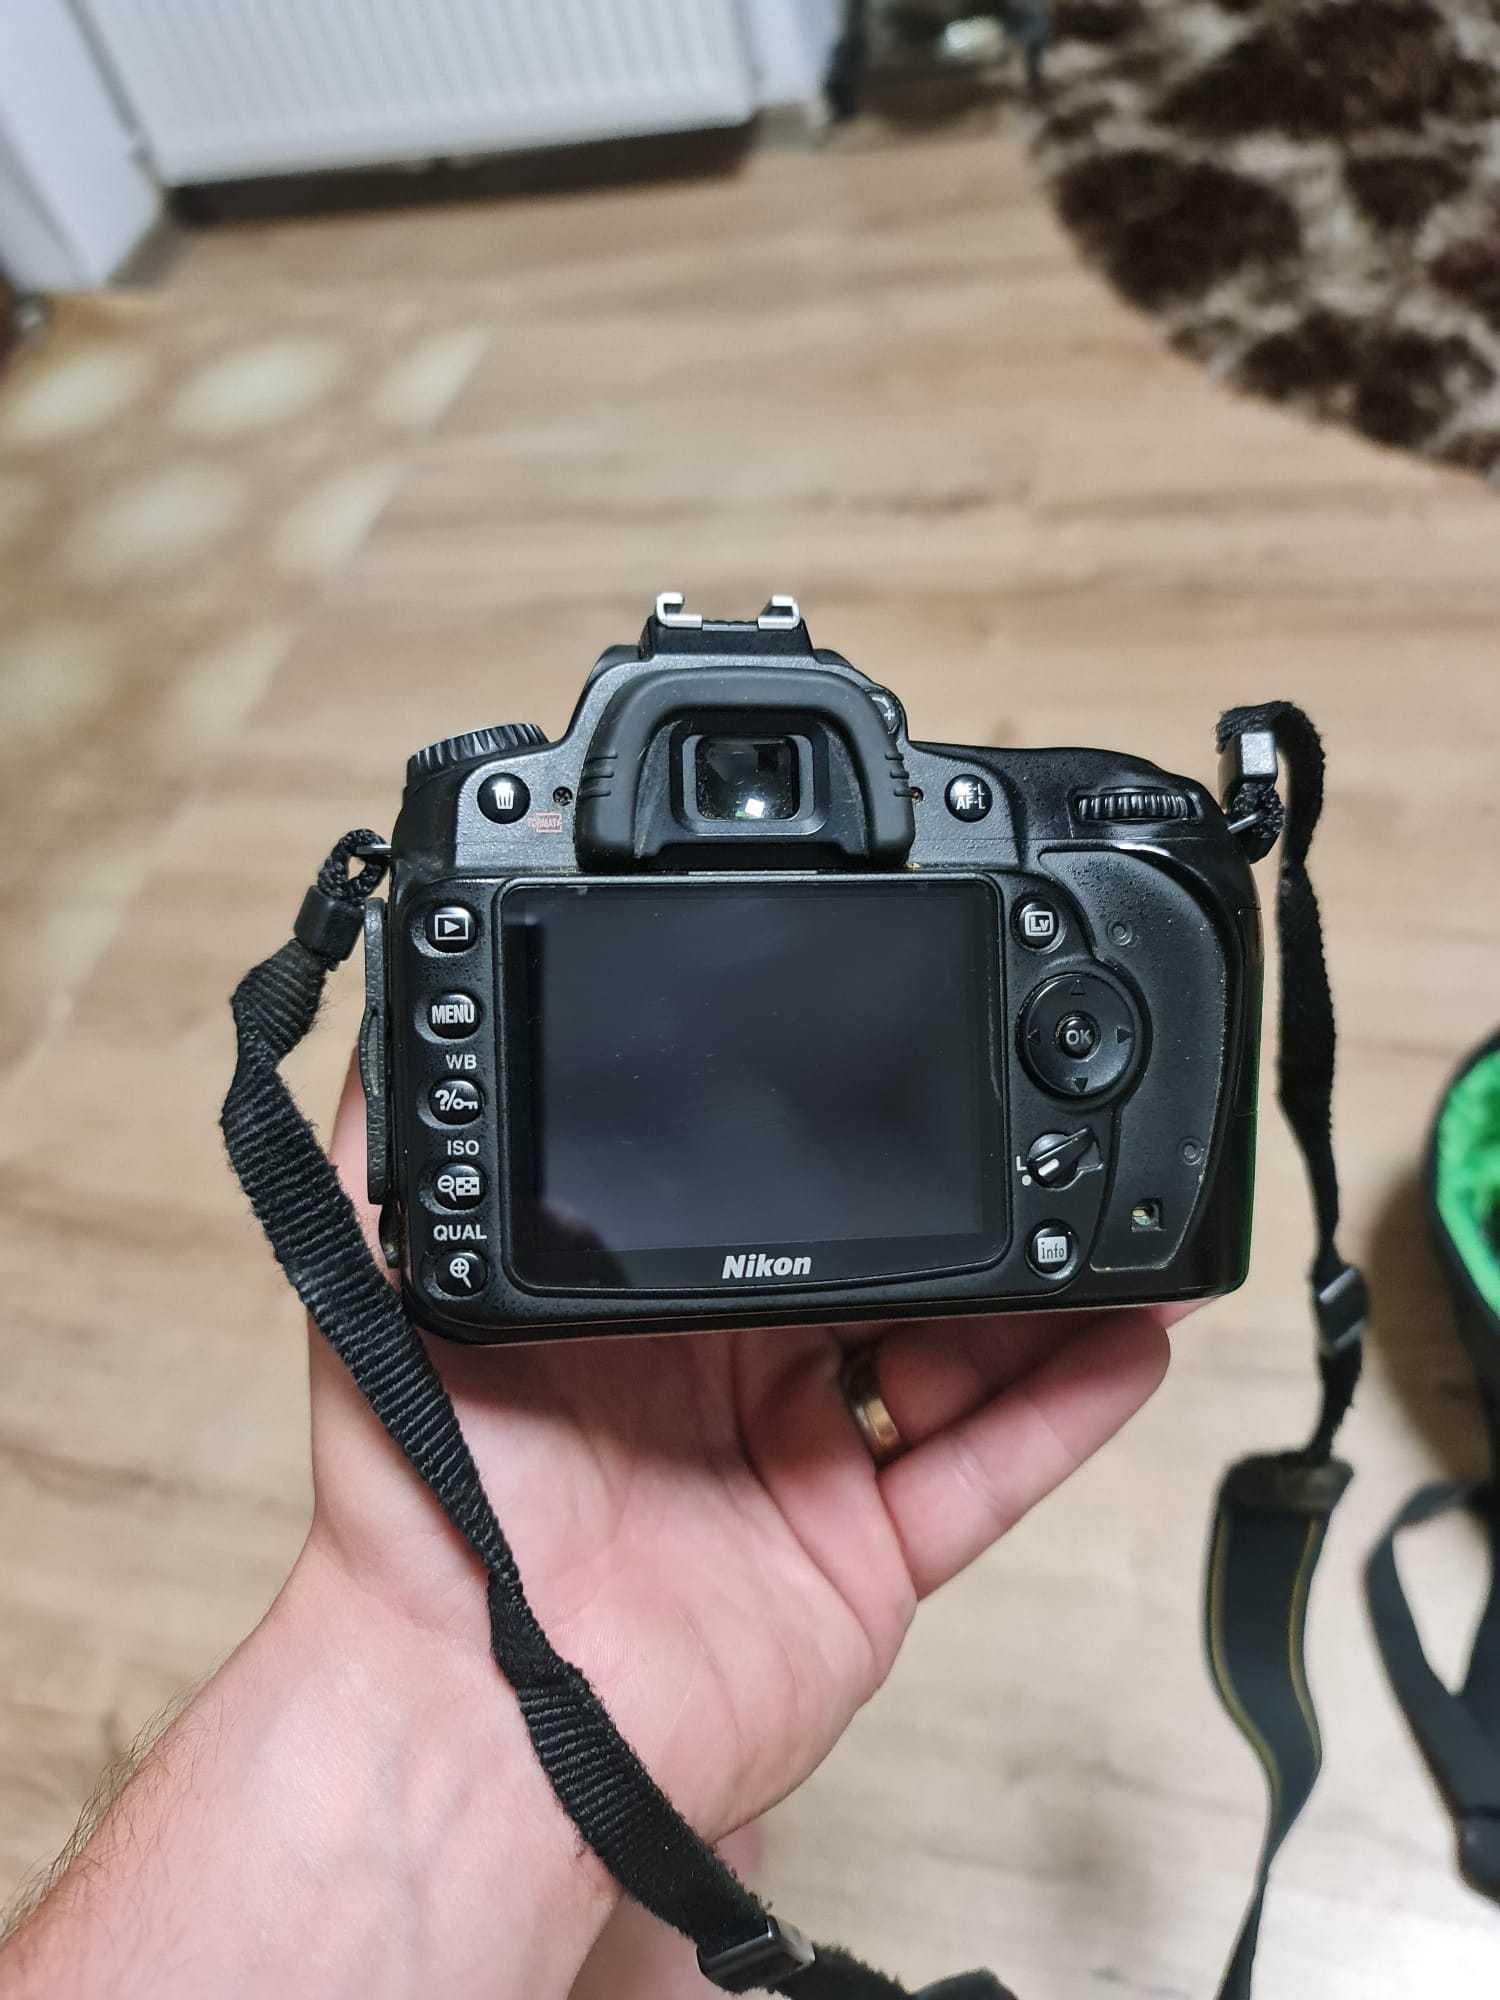 Pachet complet Nikon D90